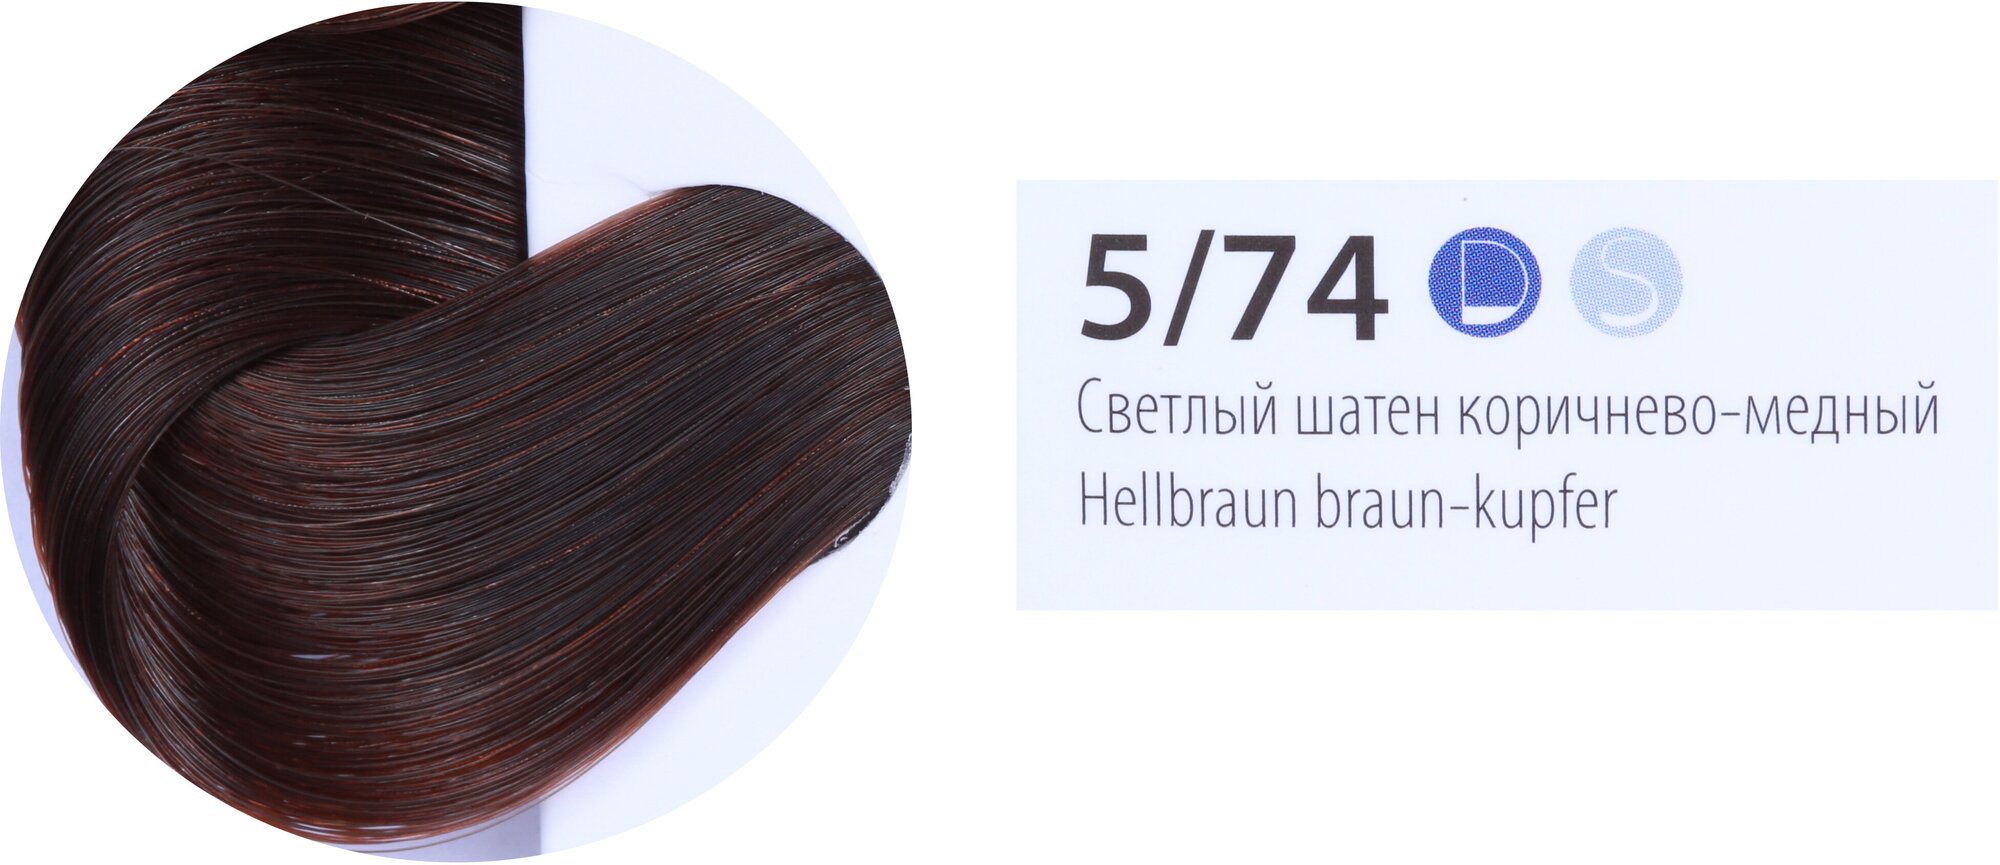 ESTEL De Luxe стойкая краска-уход для волос, 5/74 светлый шатен коричнево-медный, 60 мл - фотография № 4